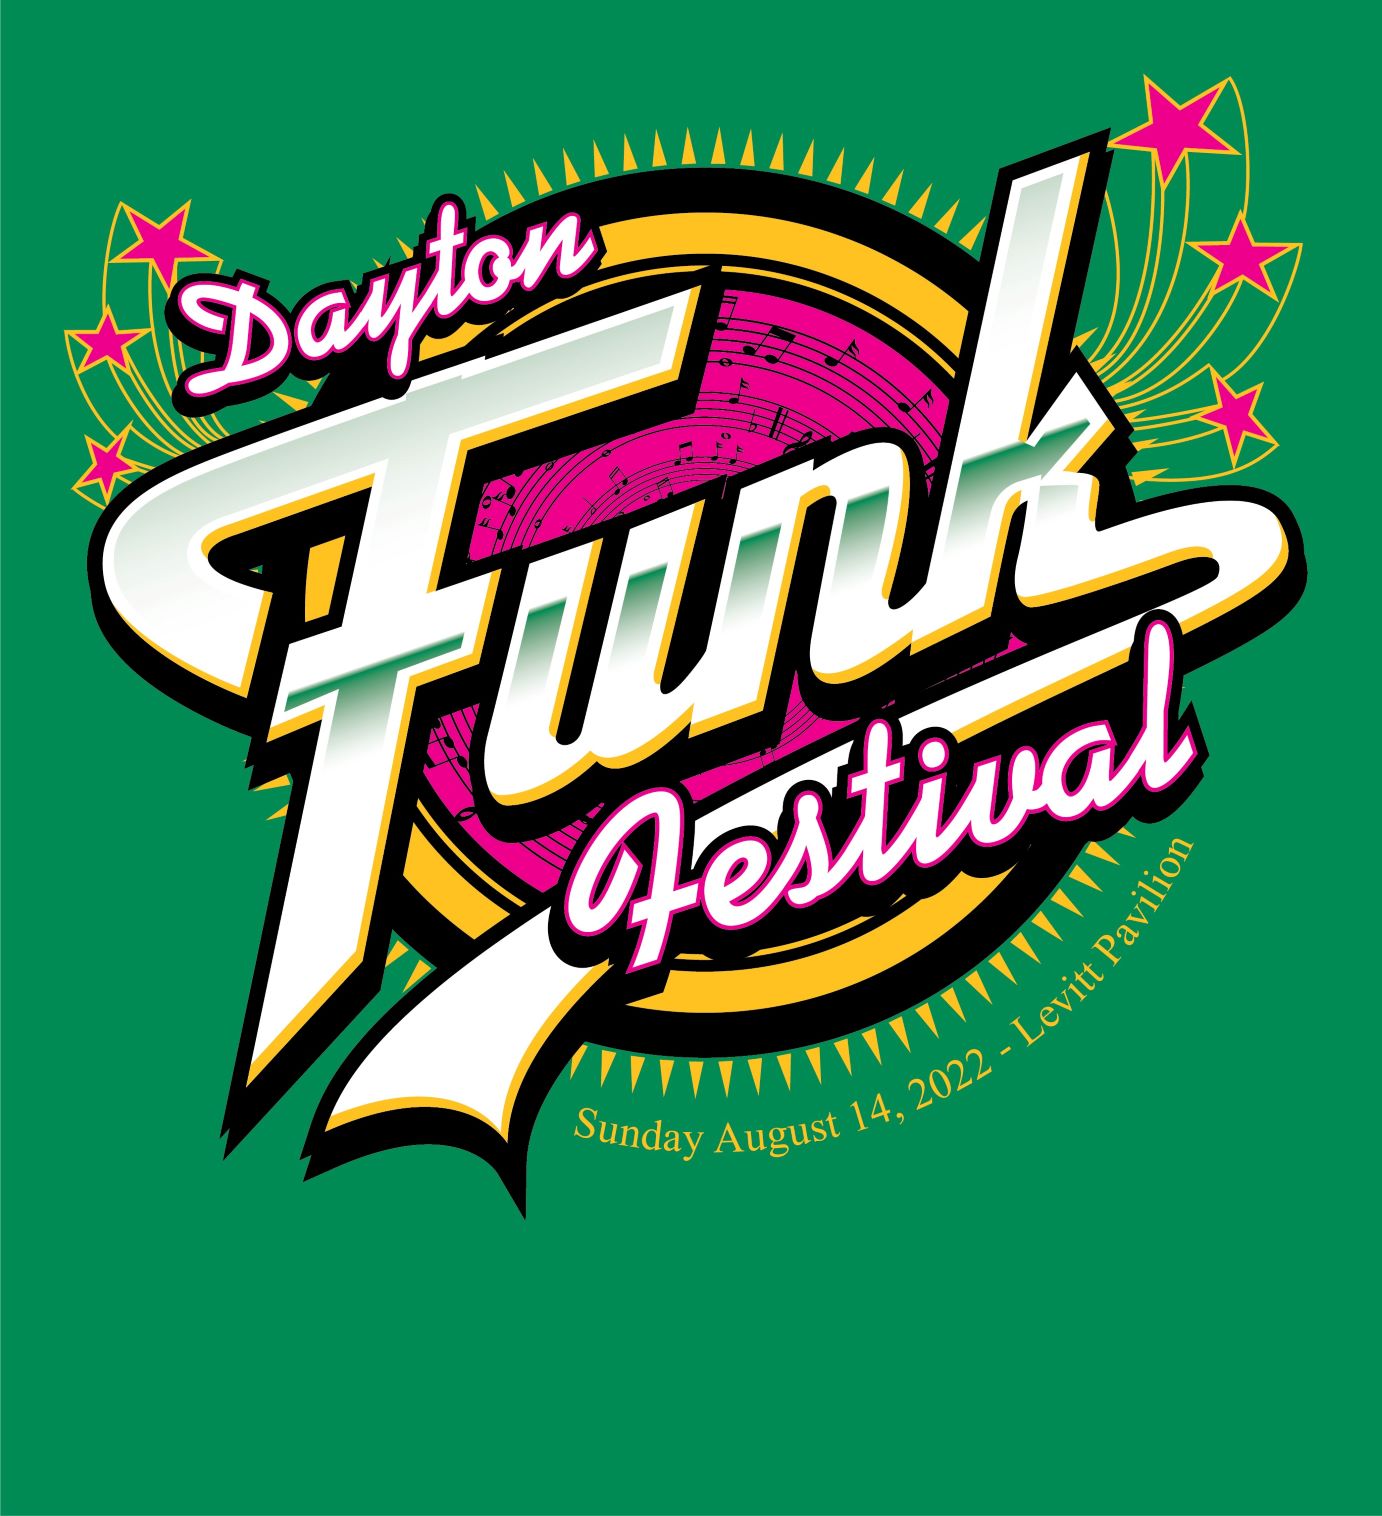 city of dayton funk festival